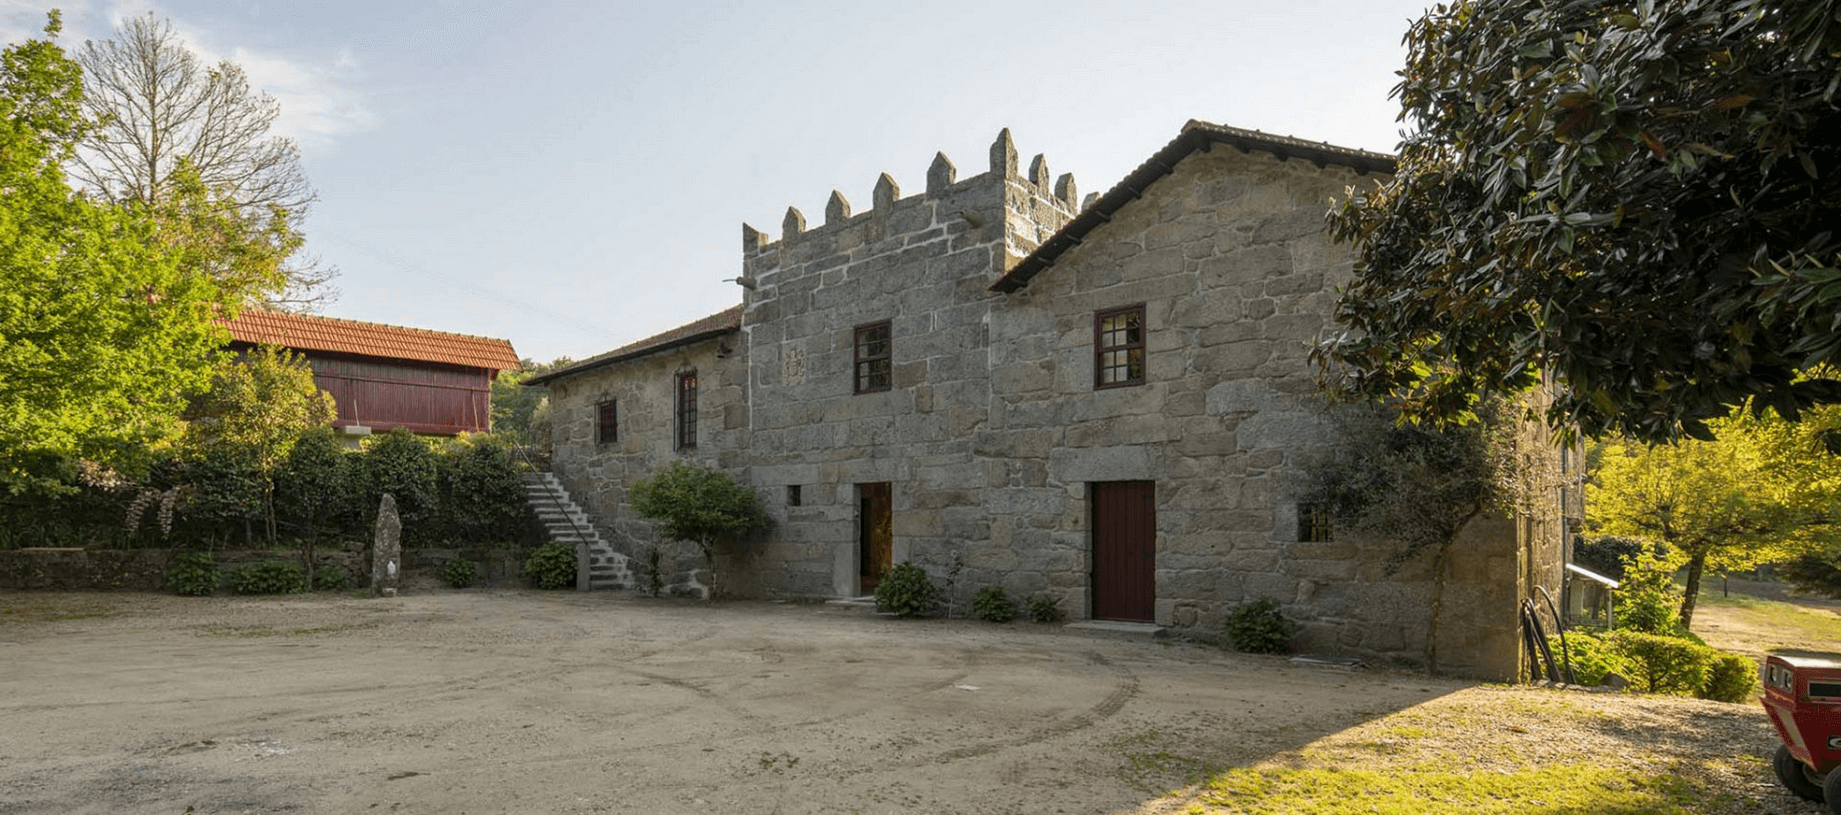 реконструкция исторических зданий в Португалии